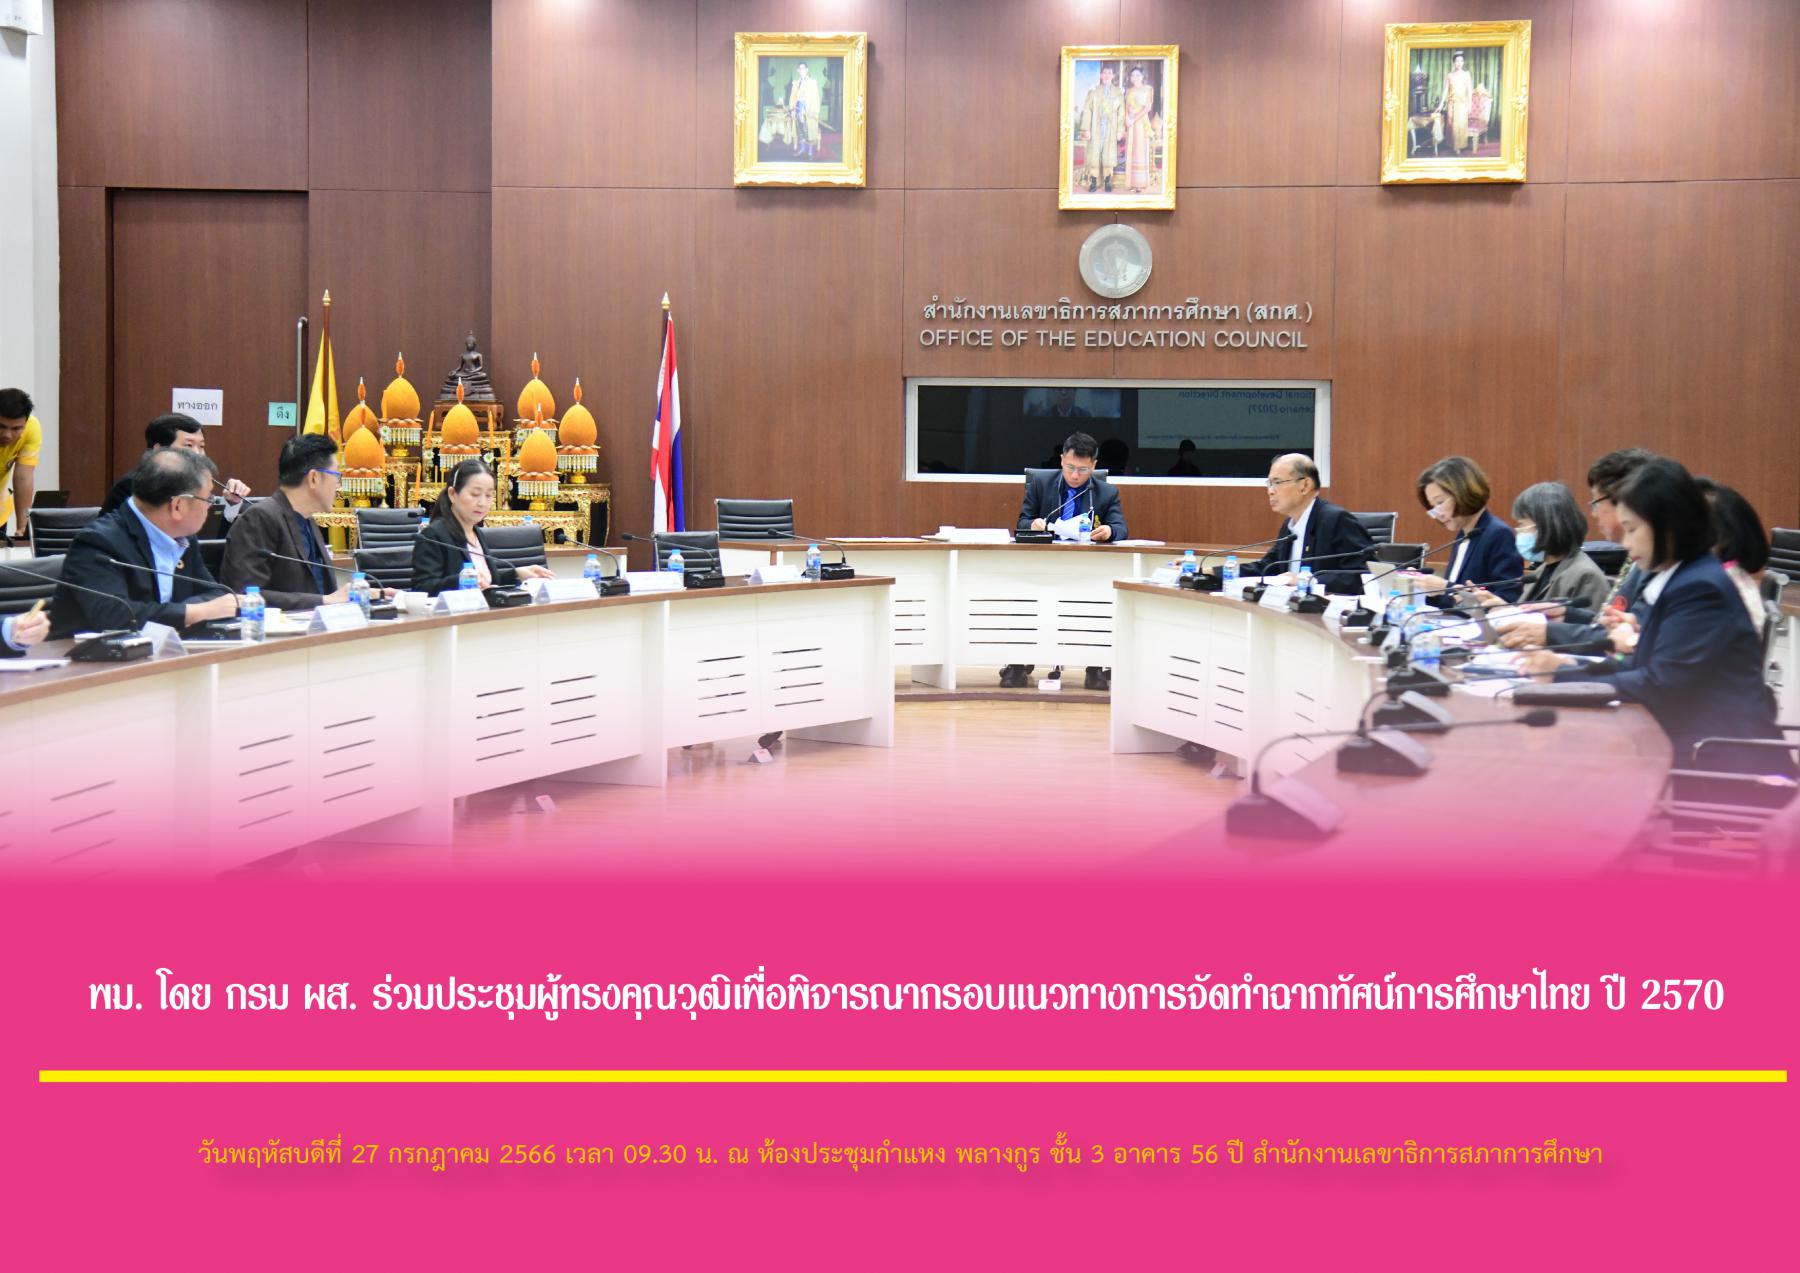 กระทรวงการพัฒนาสังคมและความมั่นคงของมนุษย์ (พม.) โดย กรมกิจการผู้สูงอายุ (ผส.) ร่วมประชุมผู้ทรงคุณวุฒิเพื่อพิจารณากรอบแนวทางการจัดทำฉากทัศน์การศึกษาไทย ปี 2570